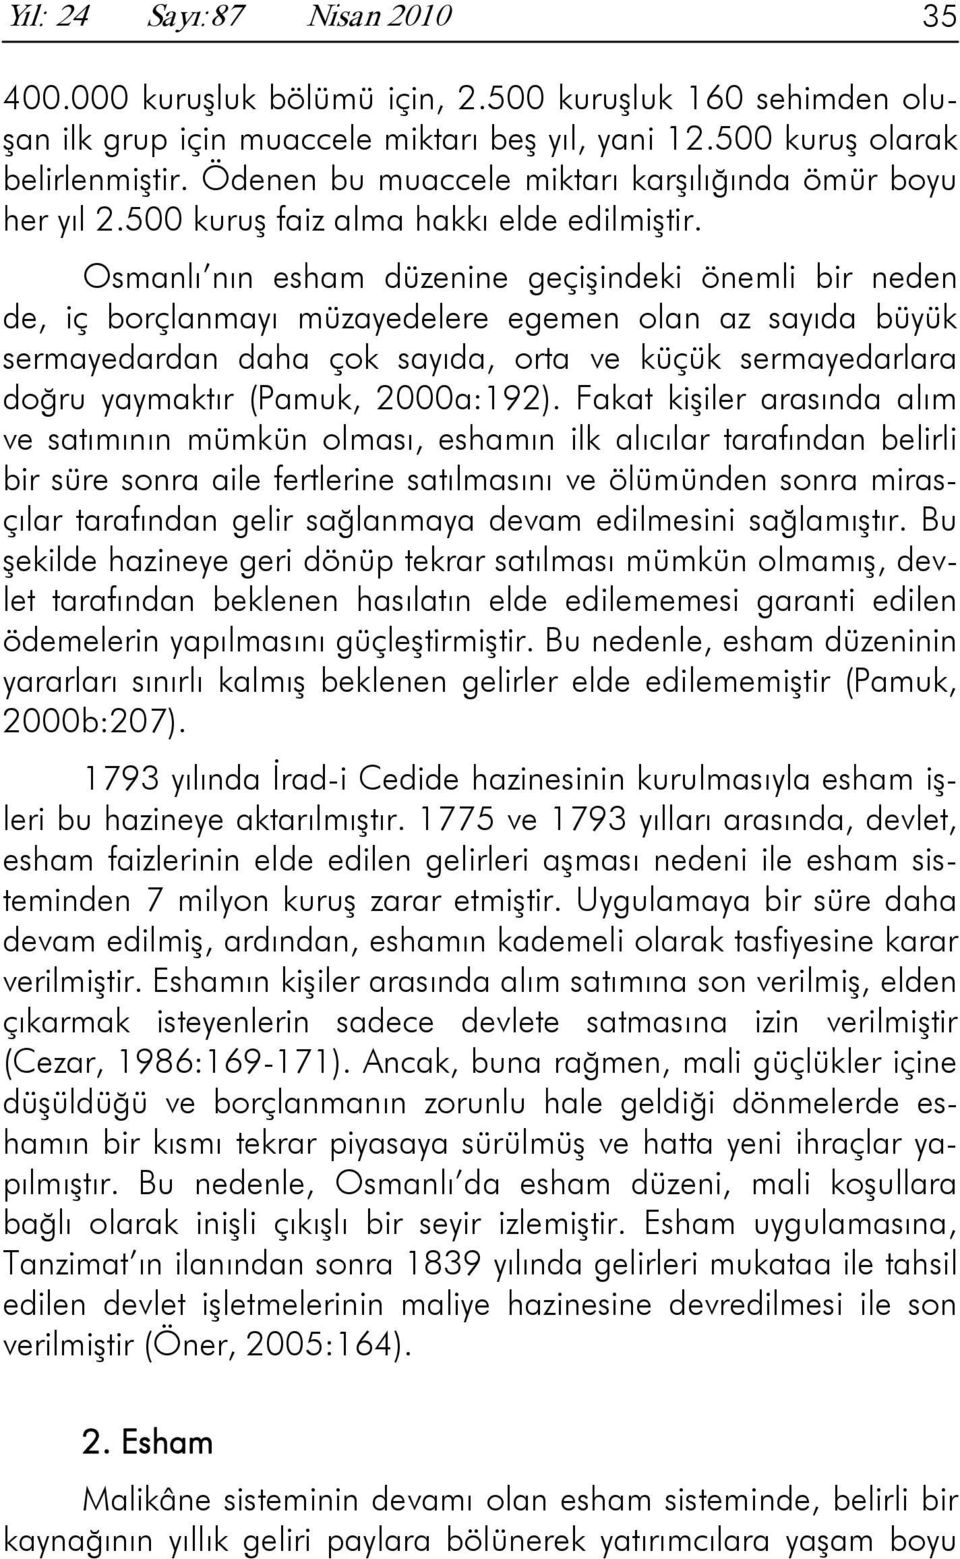 Osmanlı nın esham düzenine geçişindeki önemli bir neden de, iç borçlanmayı müzayedelere egemen olan az sayıda büyük sermayedardan daha çok sayıda, orta ve küçük sermayedarlara doğru yaymaktır (Pamuk,